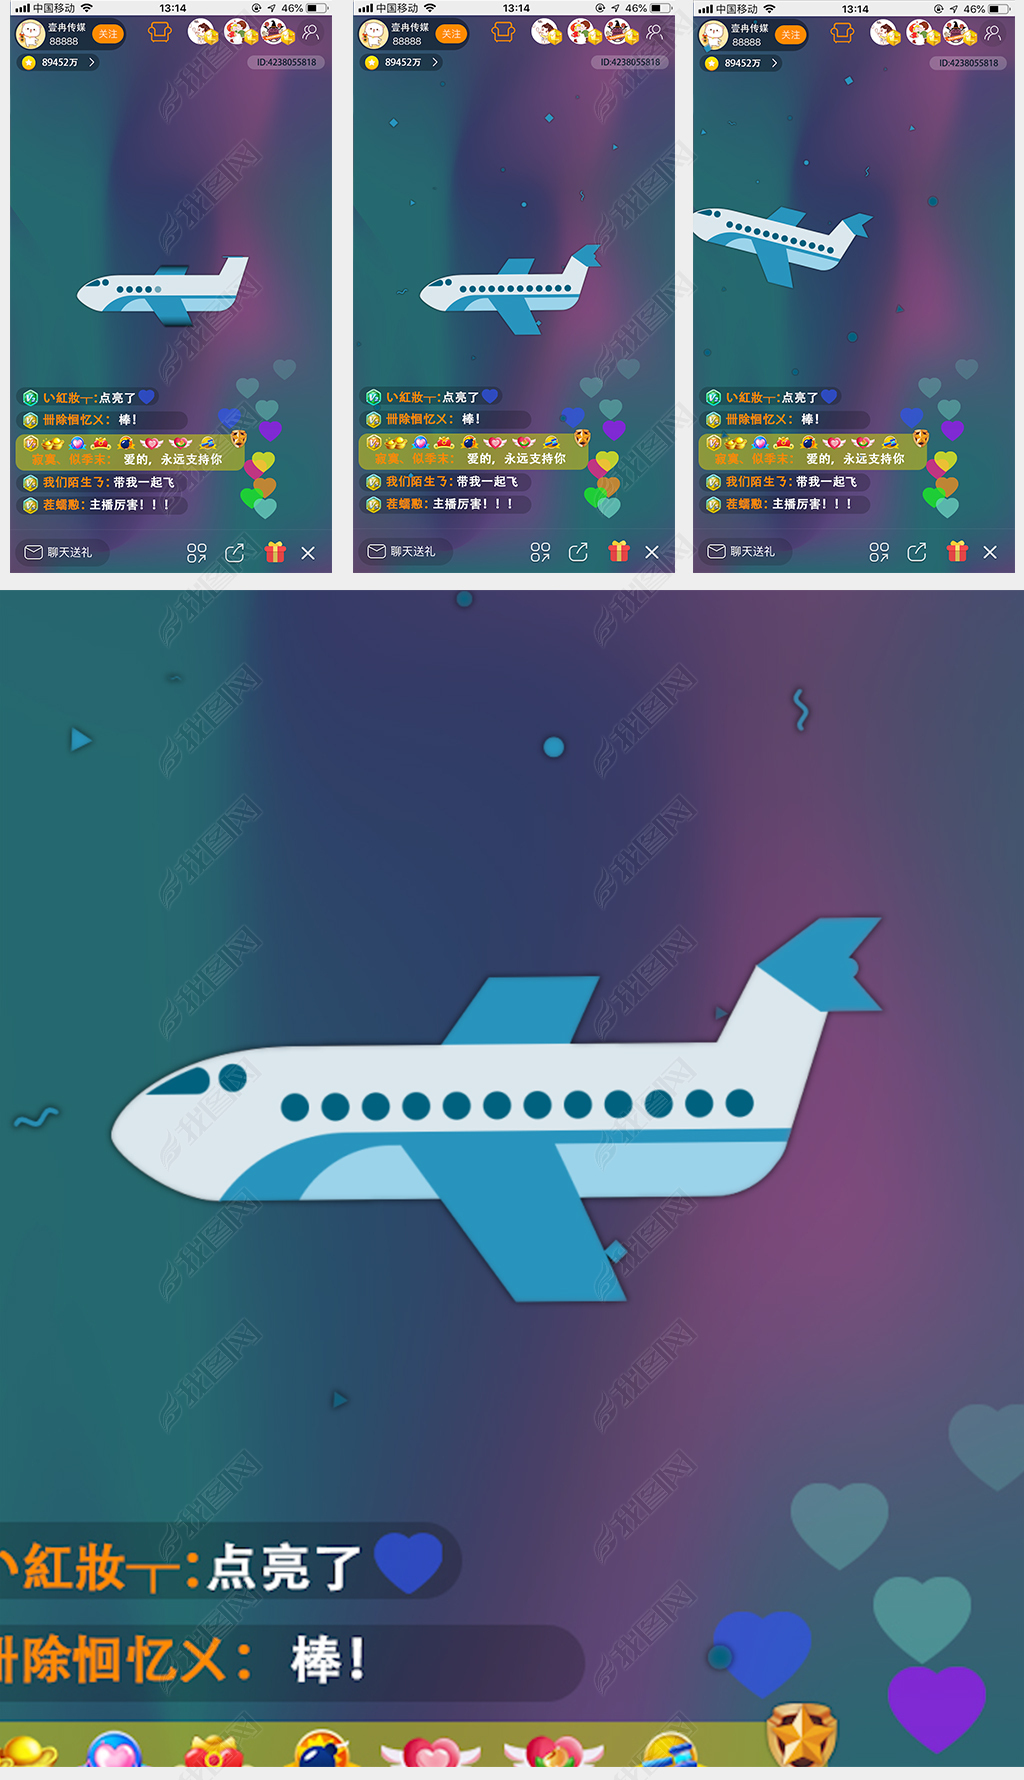 [飞机官网app下载]飞机软件上怎么找客户